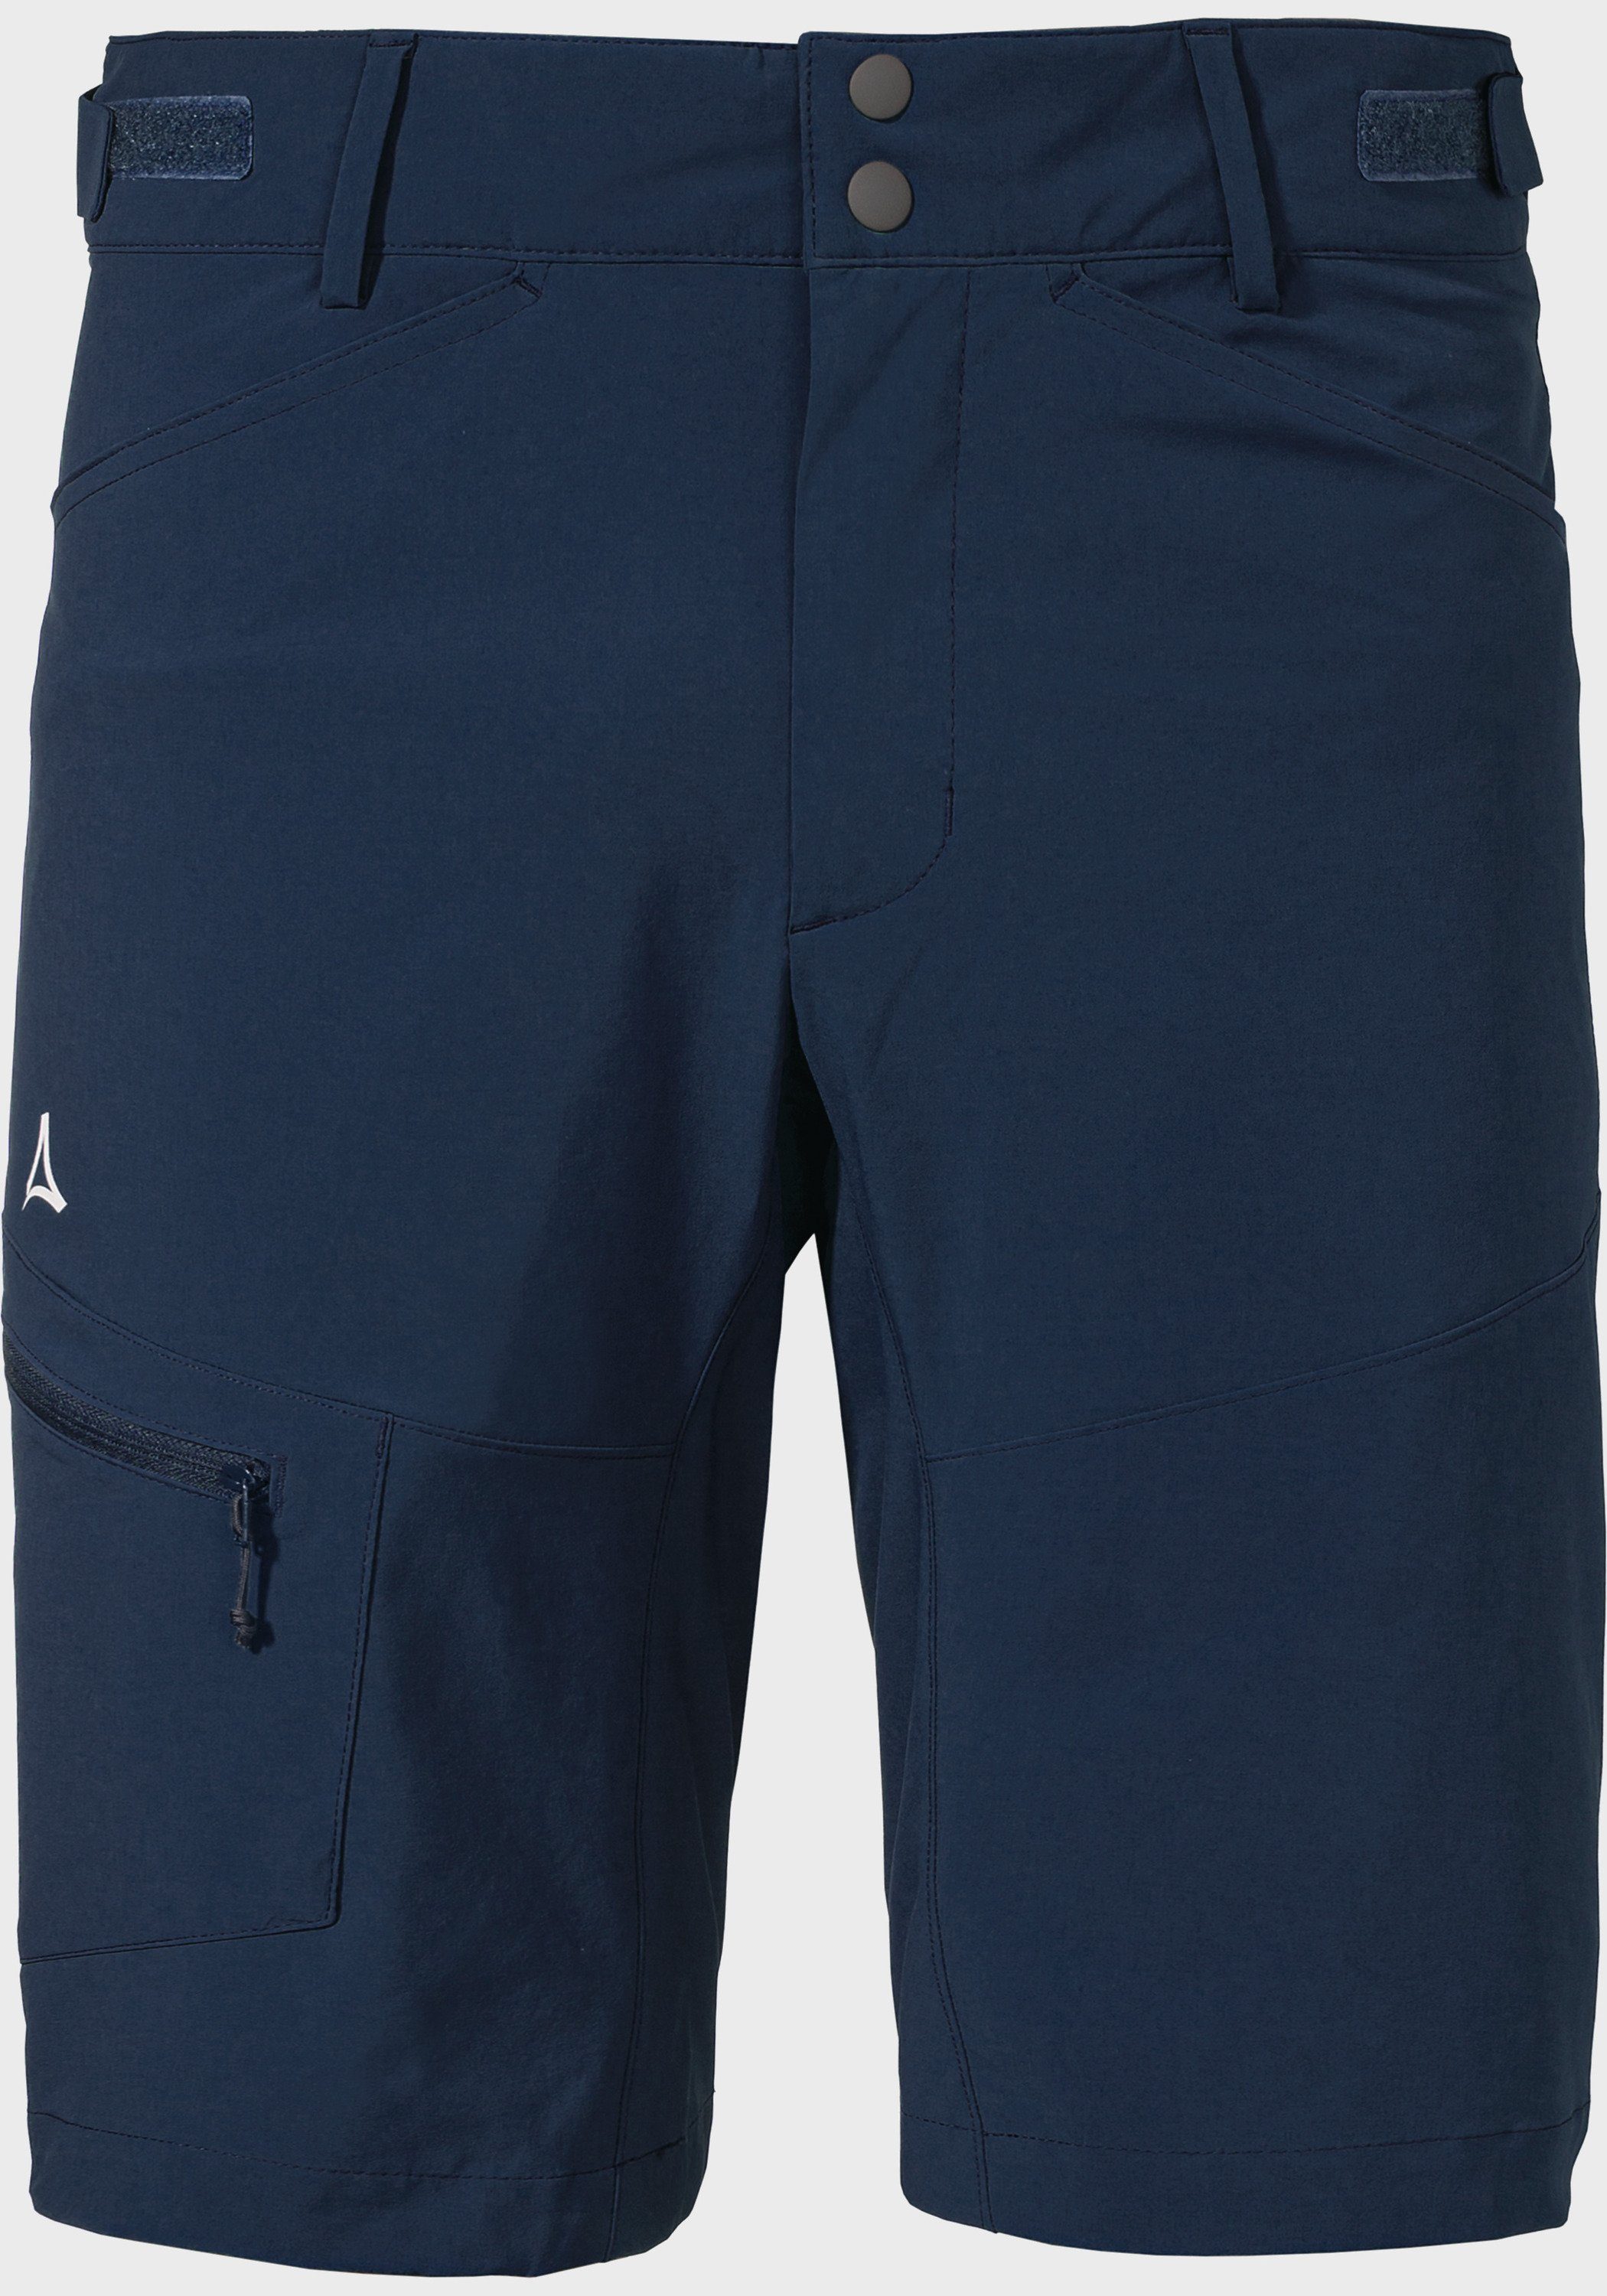 Shorts M Algarve Shorts Schöffel blau